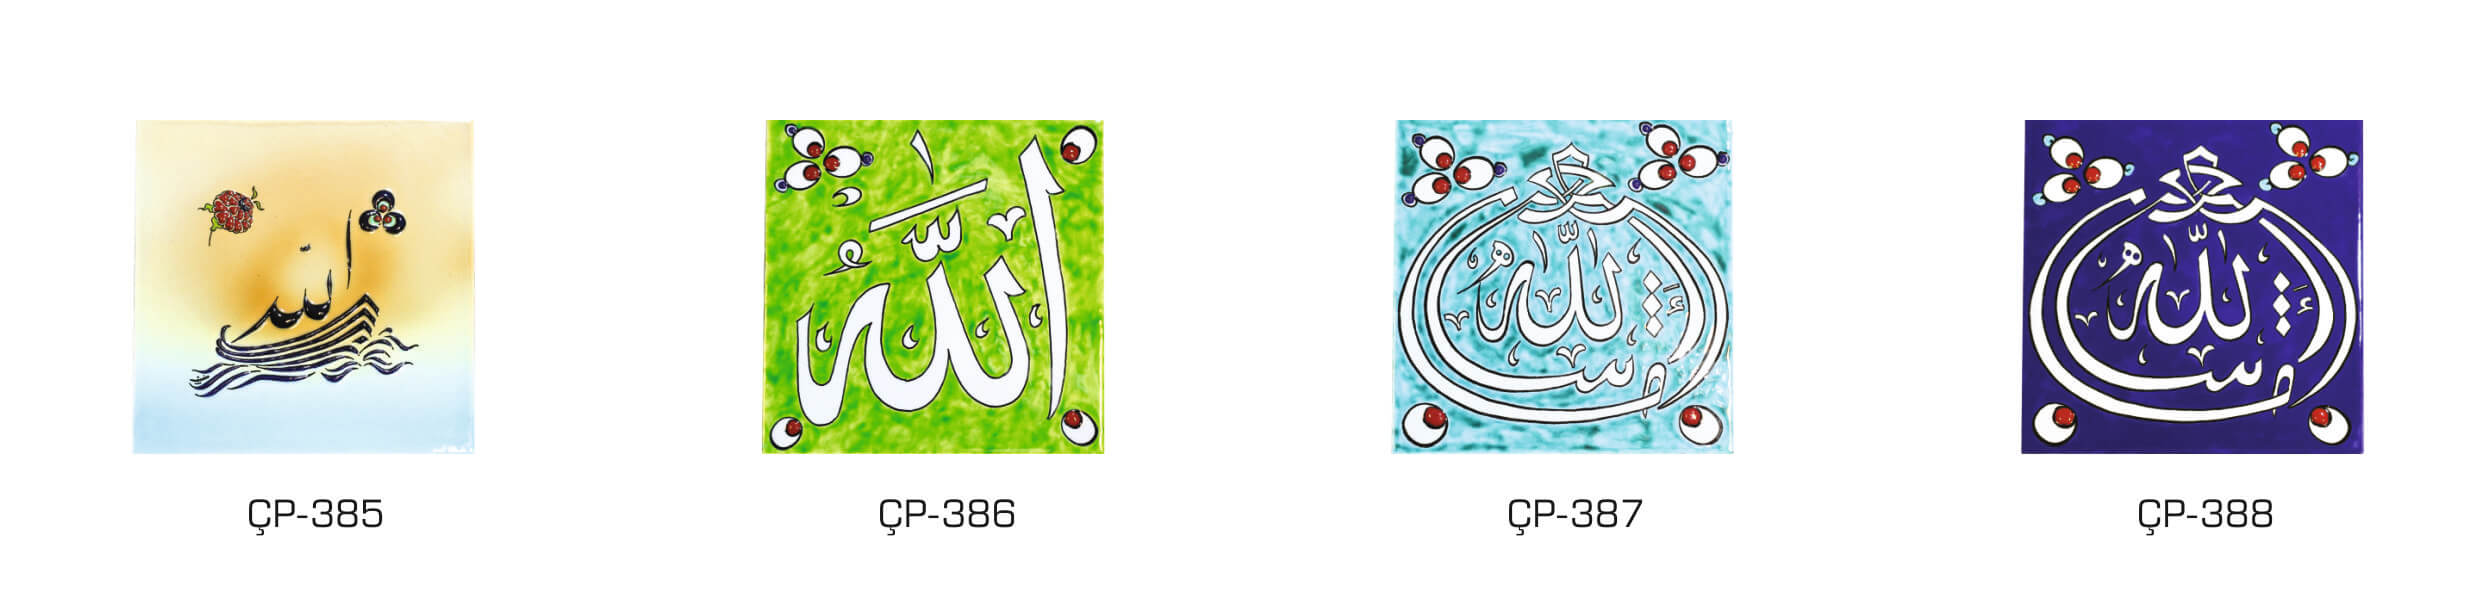 Çinili plaketlerde kullanılabilecek 20x20 cm İslami çini desenleri seçenekleri